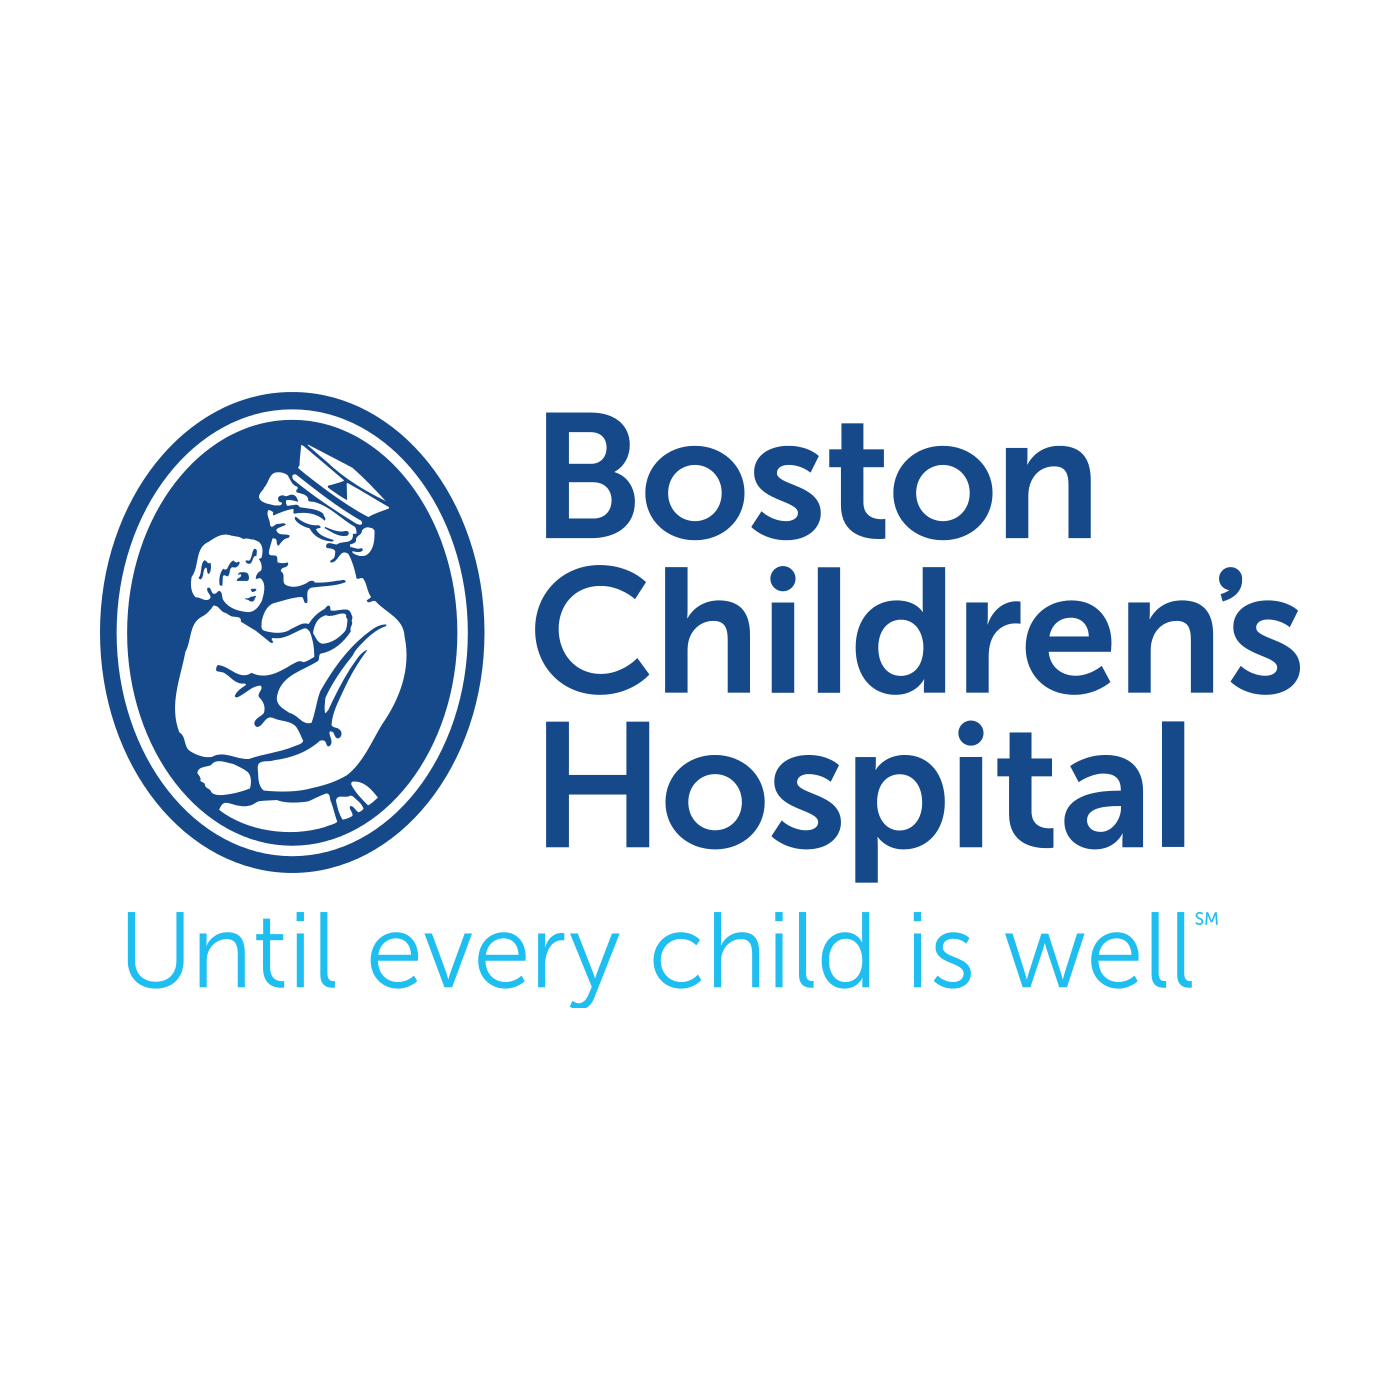 Boston Children's Hospital website